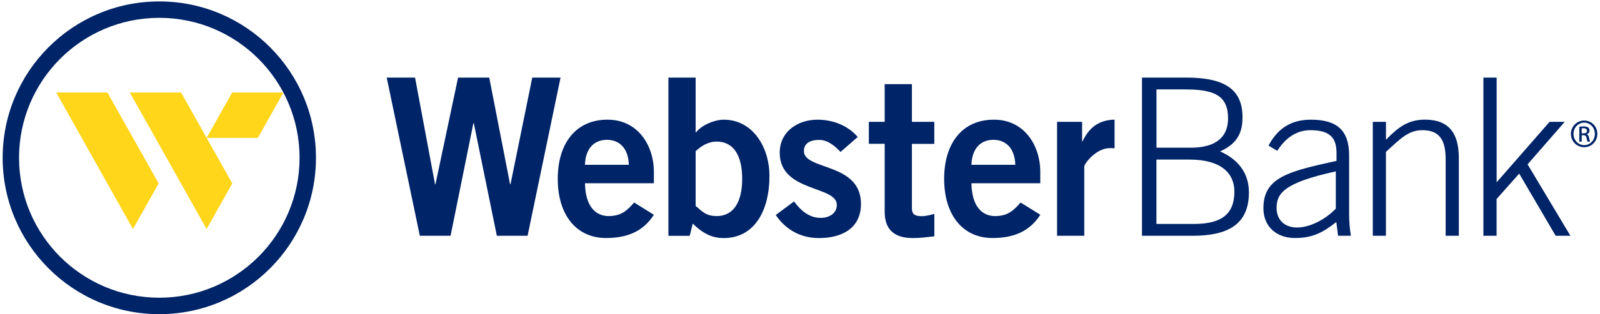 Webster_Bank_logo.svg